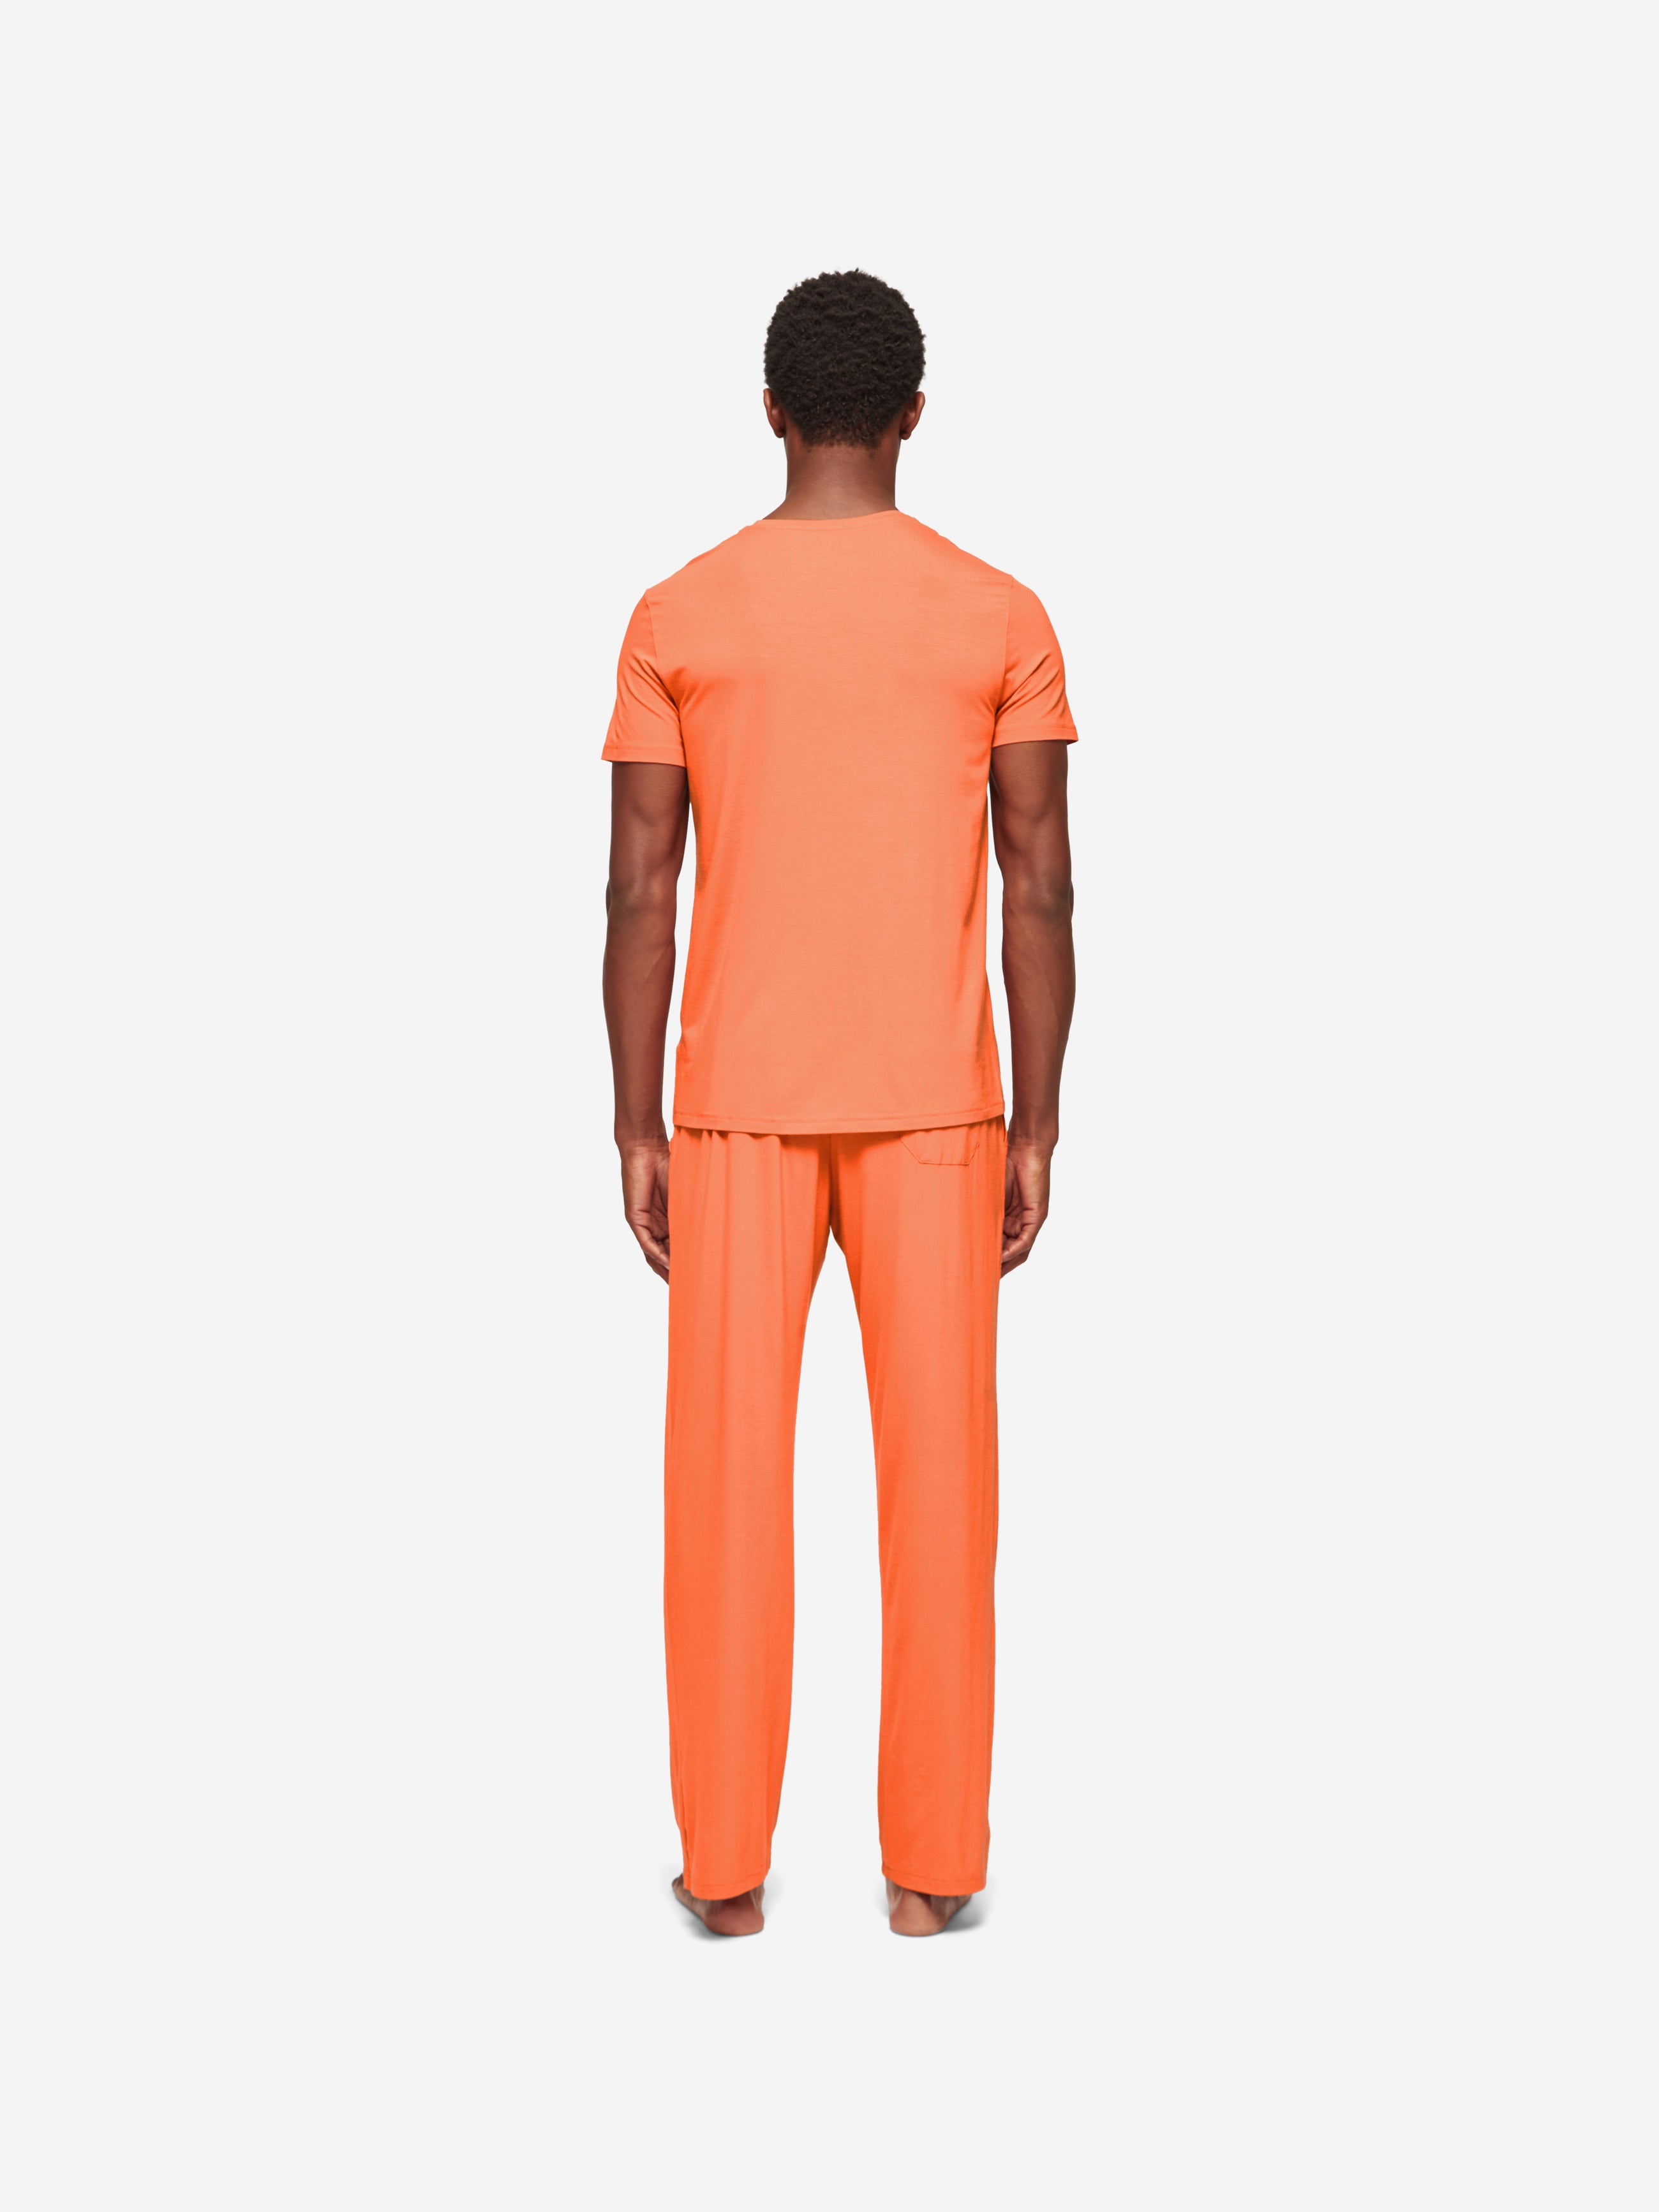 Men's Lounge Trousers Basel Micro Modal Stretch Orange